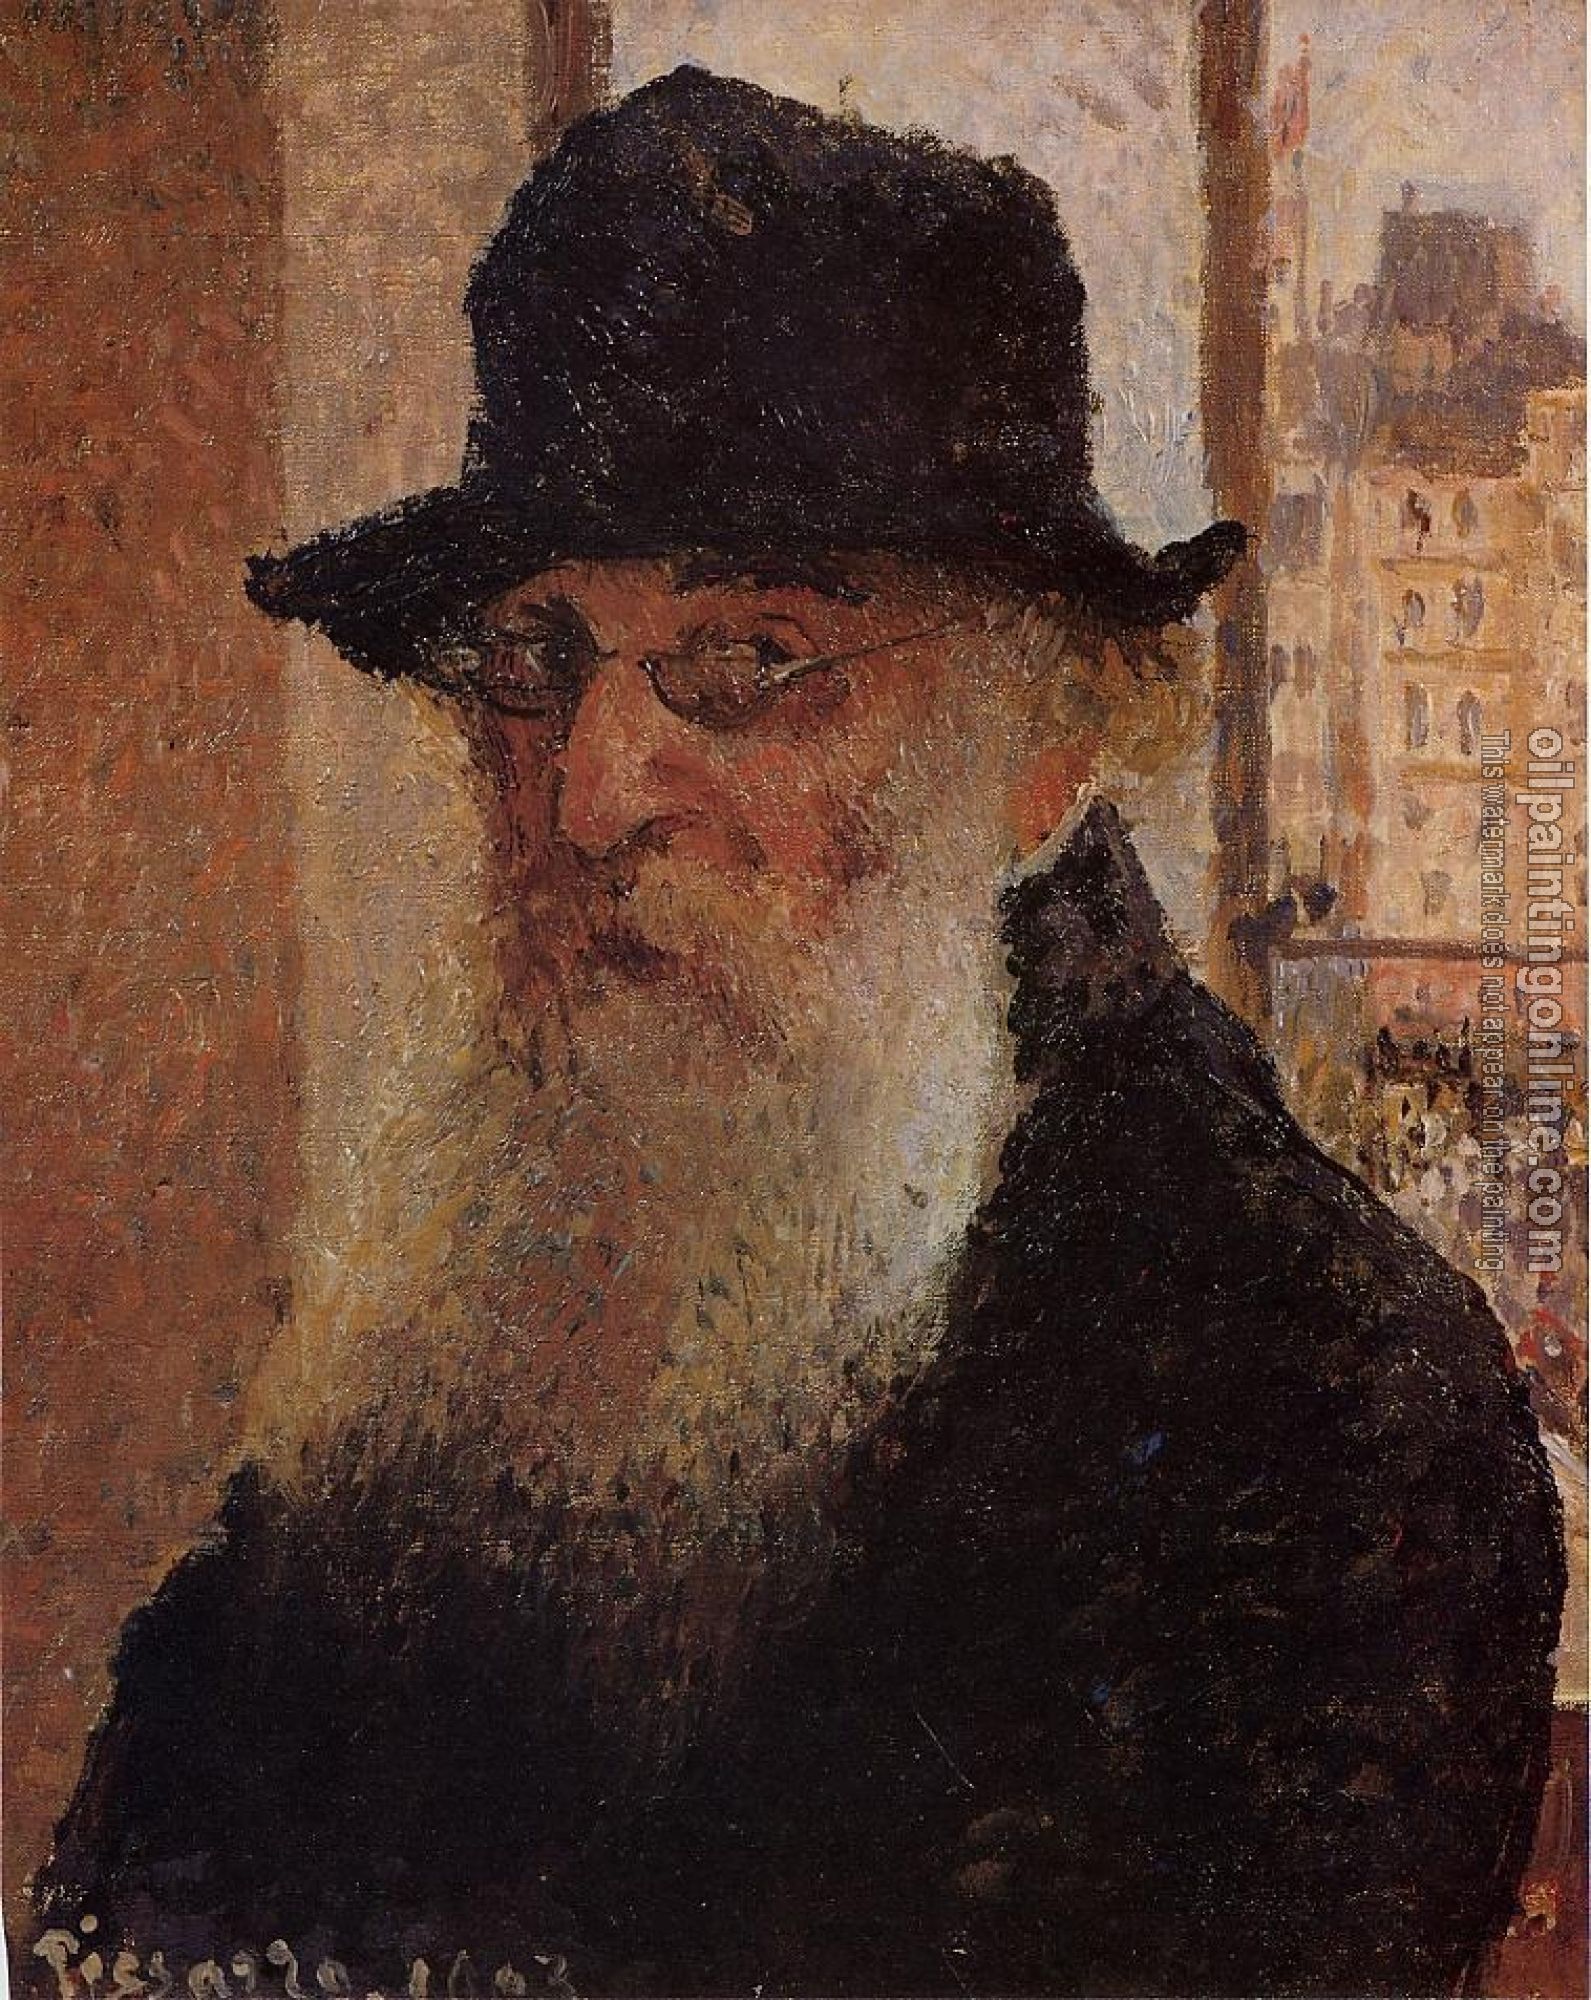 Pissarro, Camille - Self Portrait